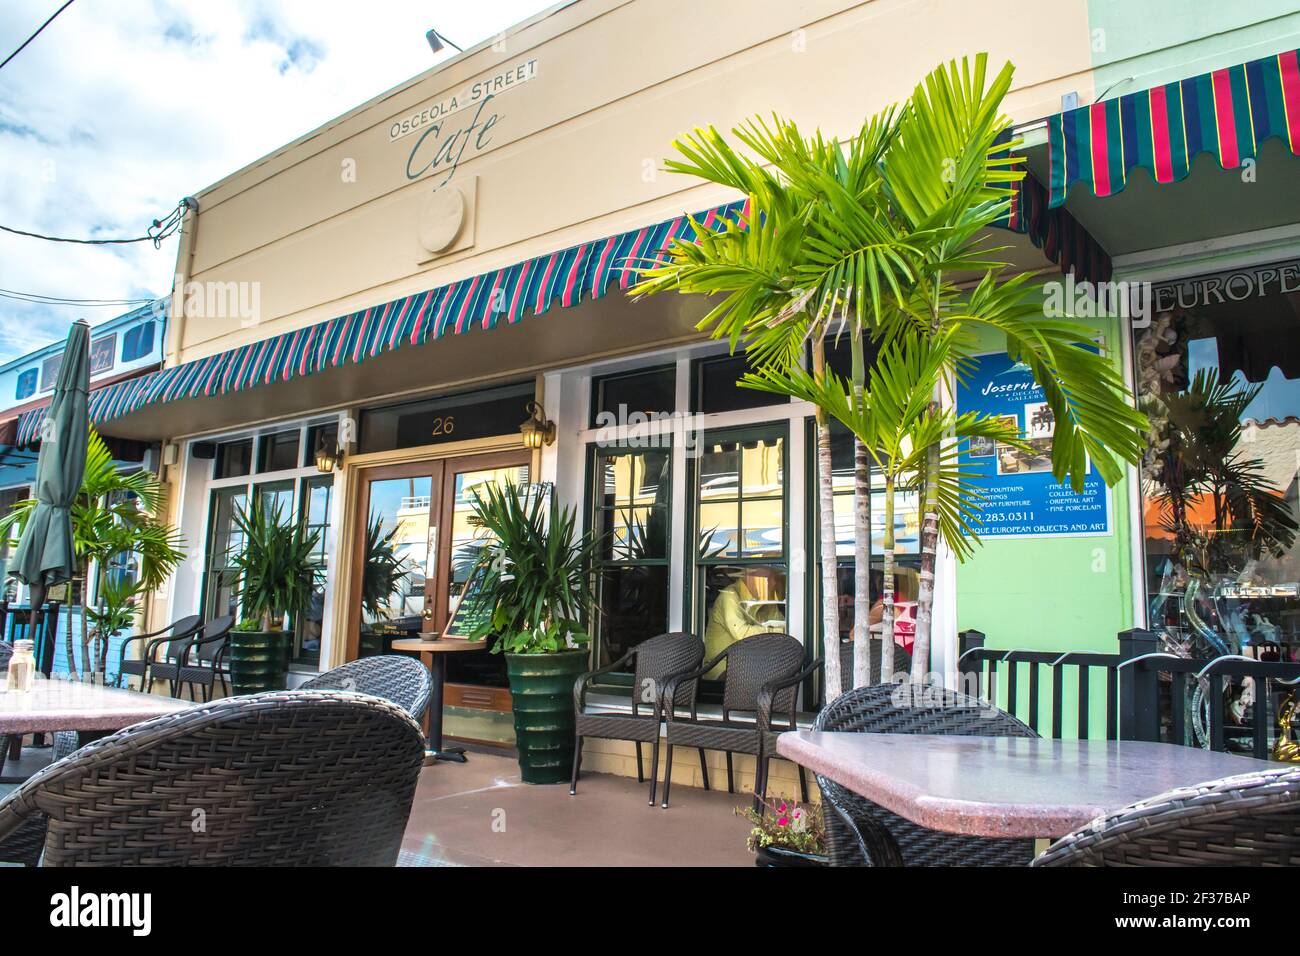 Centre-ville historique de Stuart, Floride. Scènes le long des rues avec des vitrines, des restaurants et des hôtels locaux à la ville de bord de mer dans le sud-est de la Floride Banque D'Images